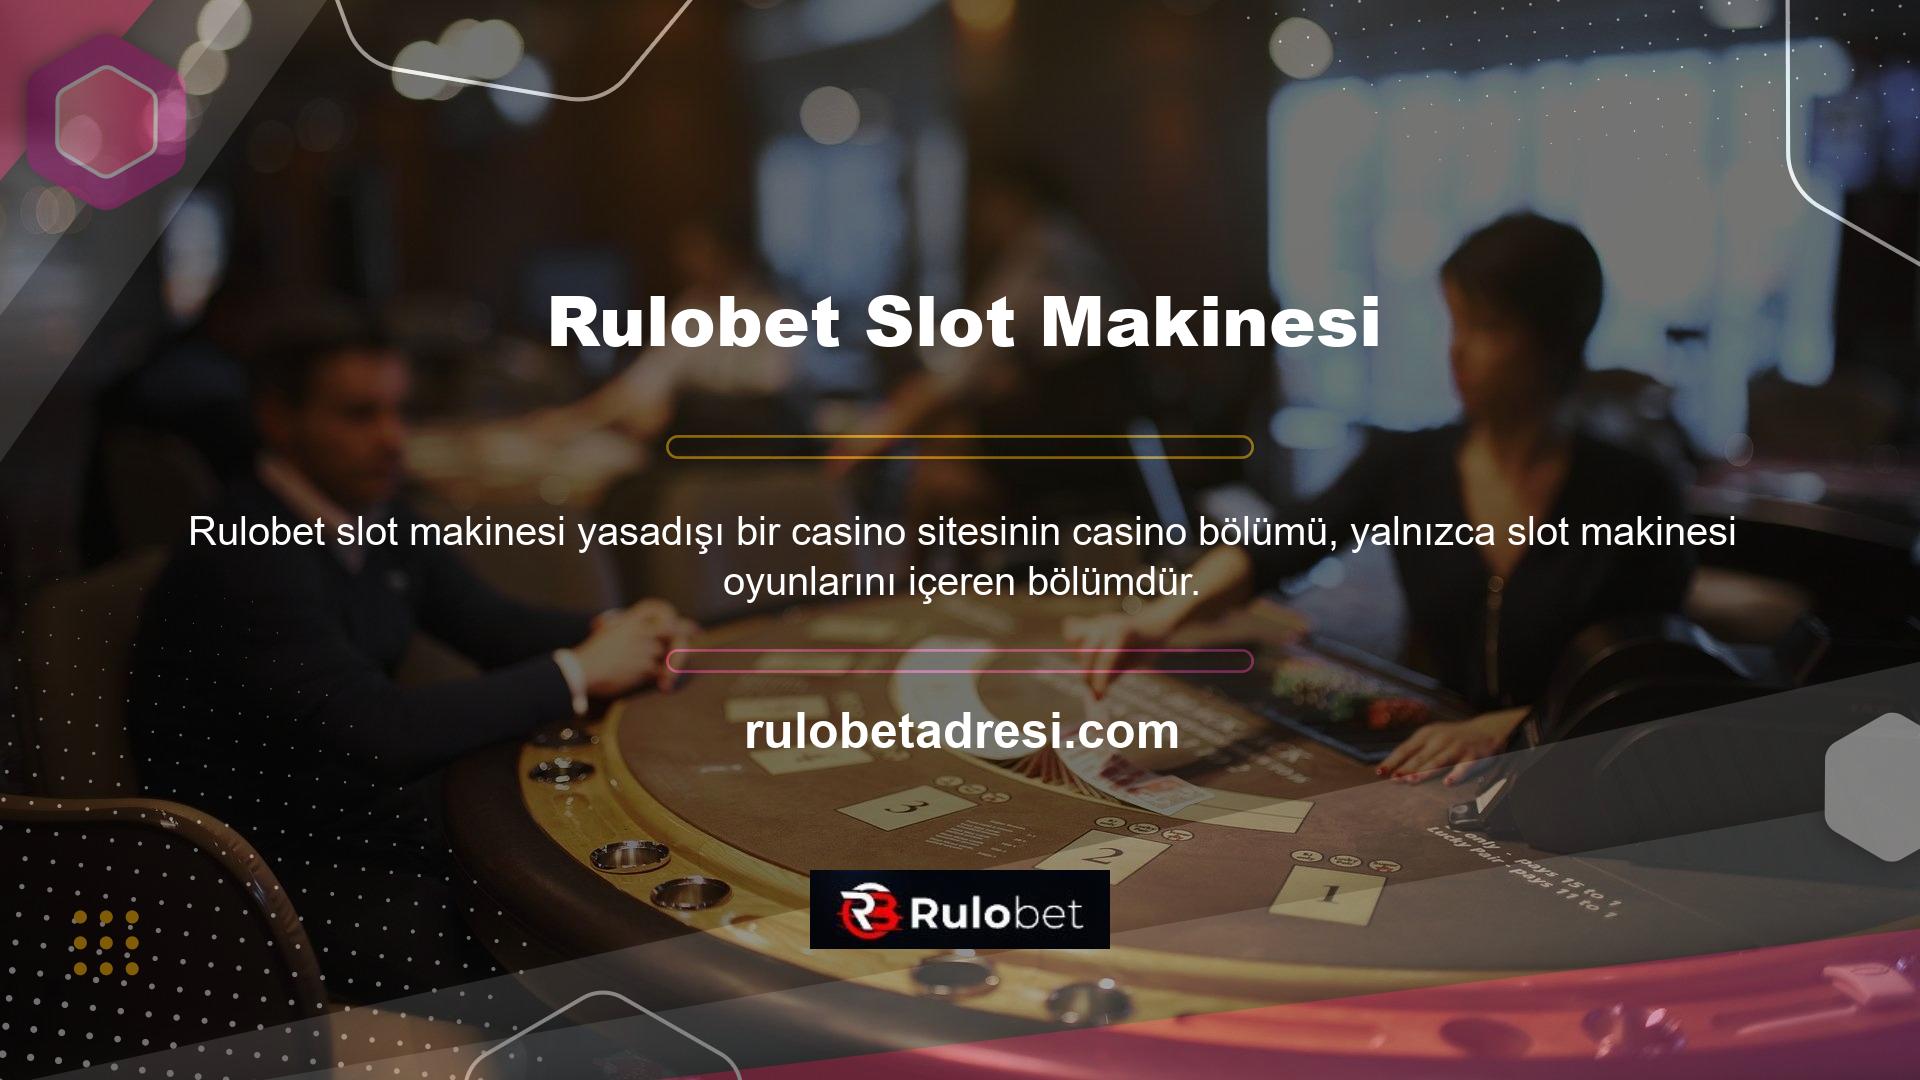 Rulobet, casino alanında bazı masa oyunlarını oynamak için ağ altyapısını kullanıyor